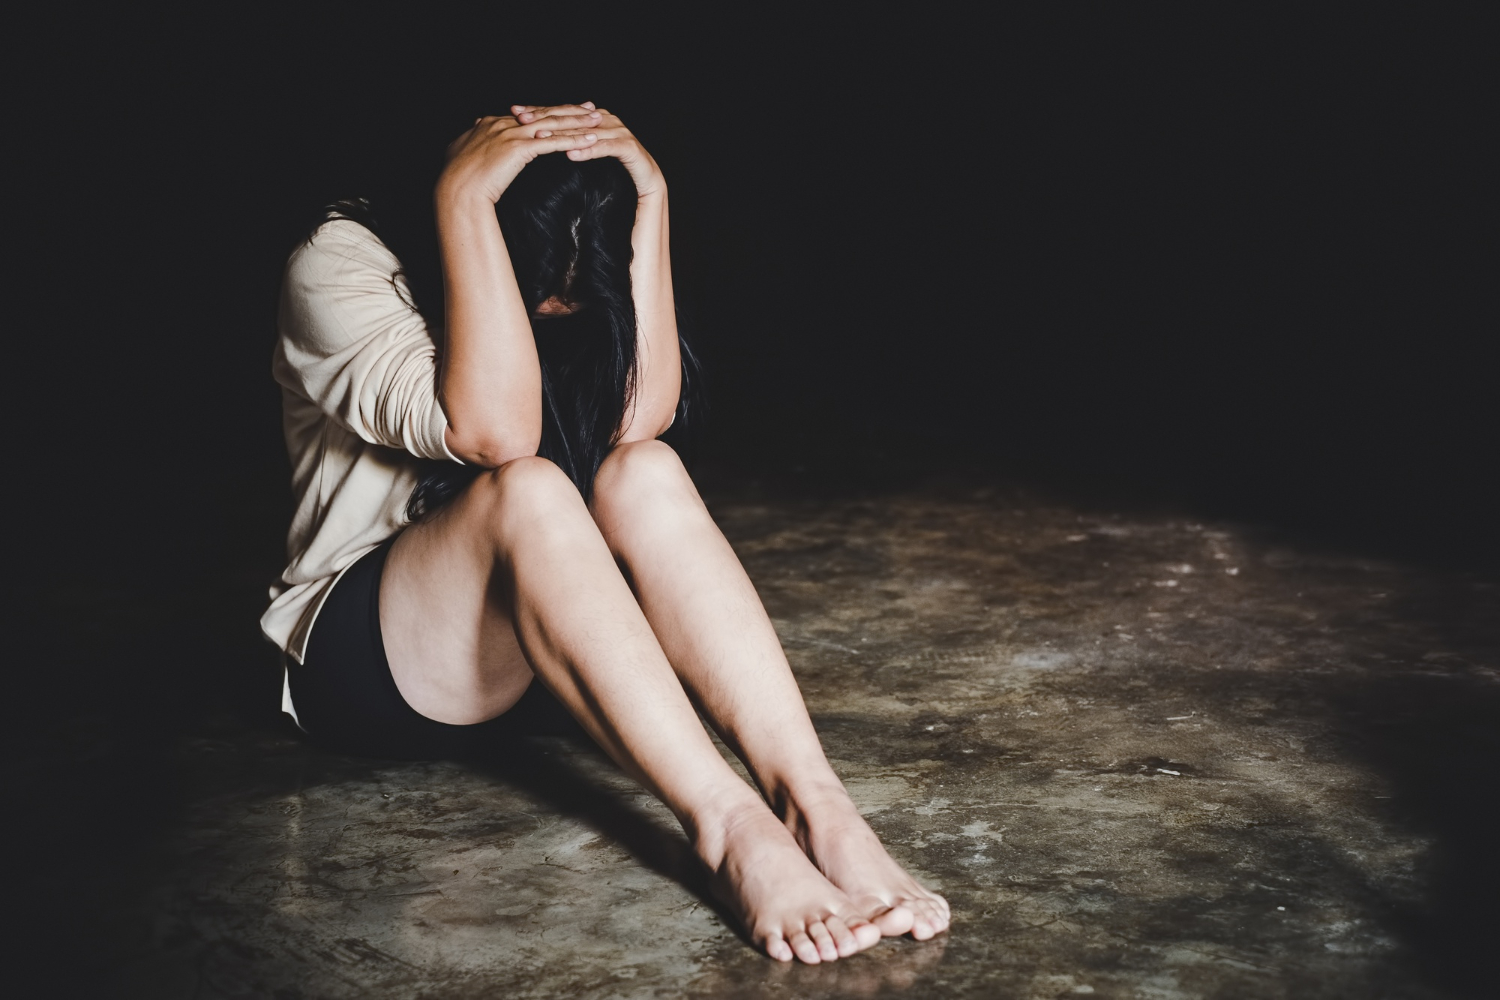 woman post rape seated on floor distraught